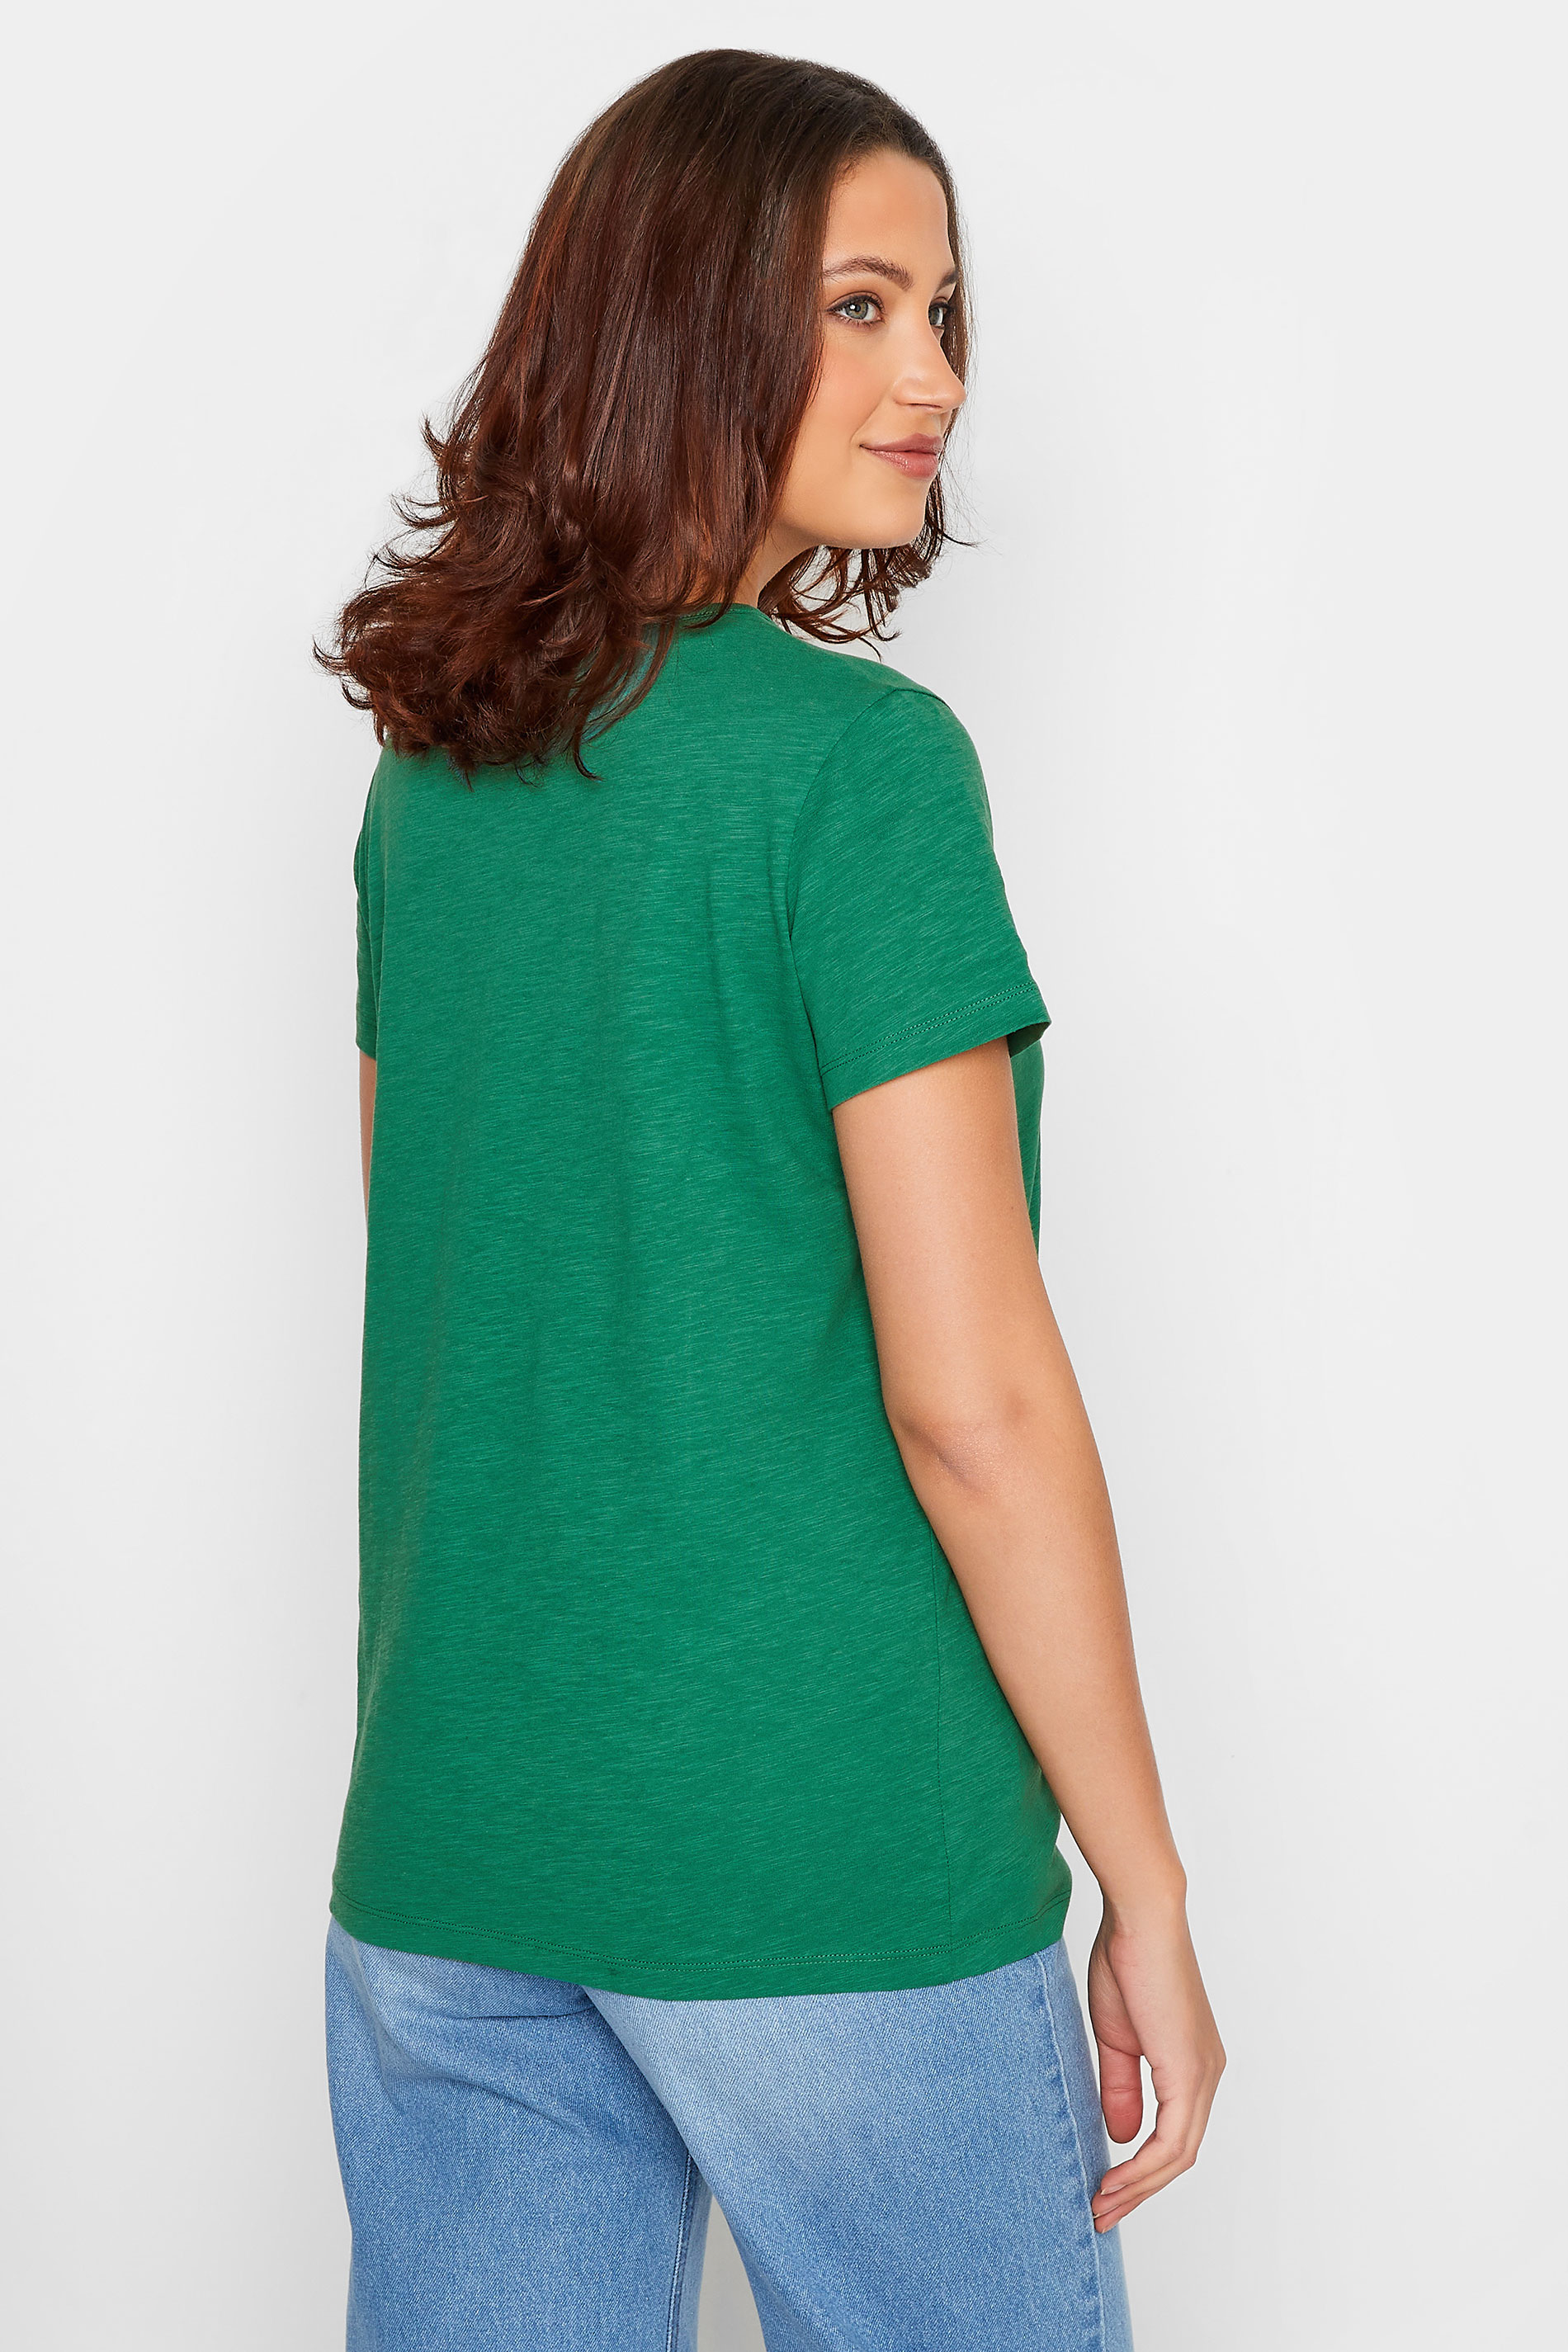 LTS Tall Women's Green Short Sleeve Cotton T-Shirt | Long Tall Sally  3